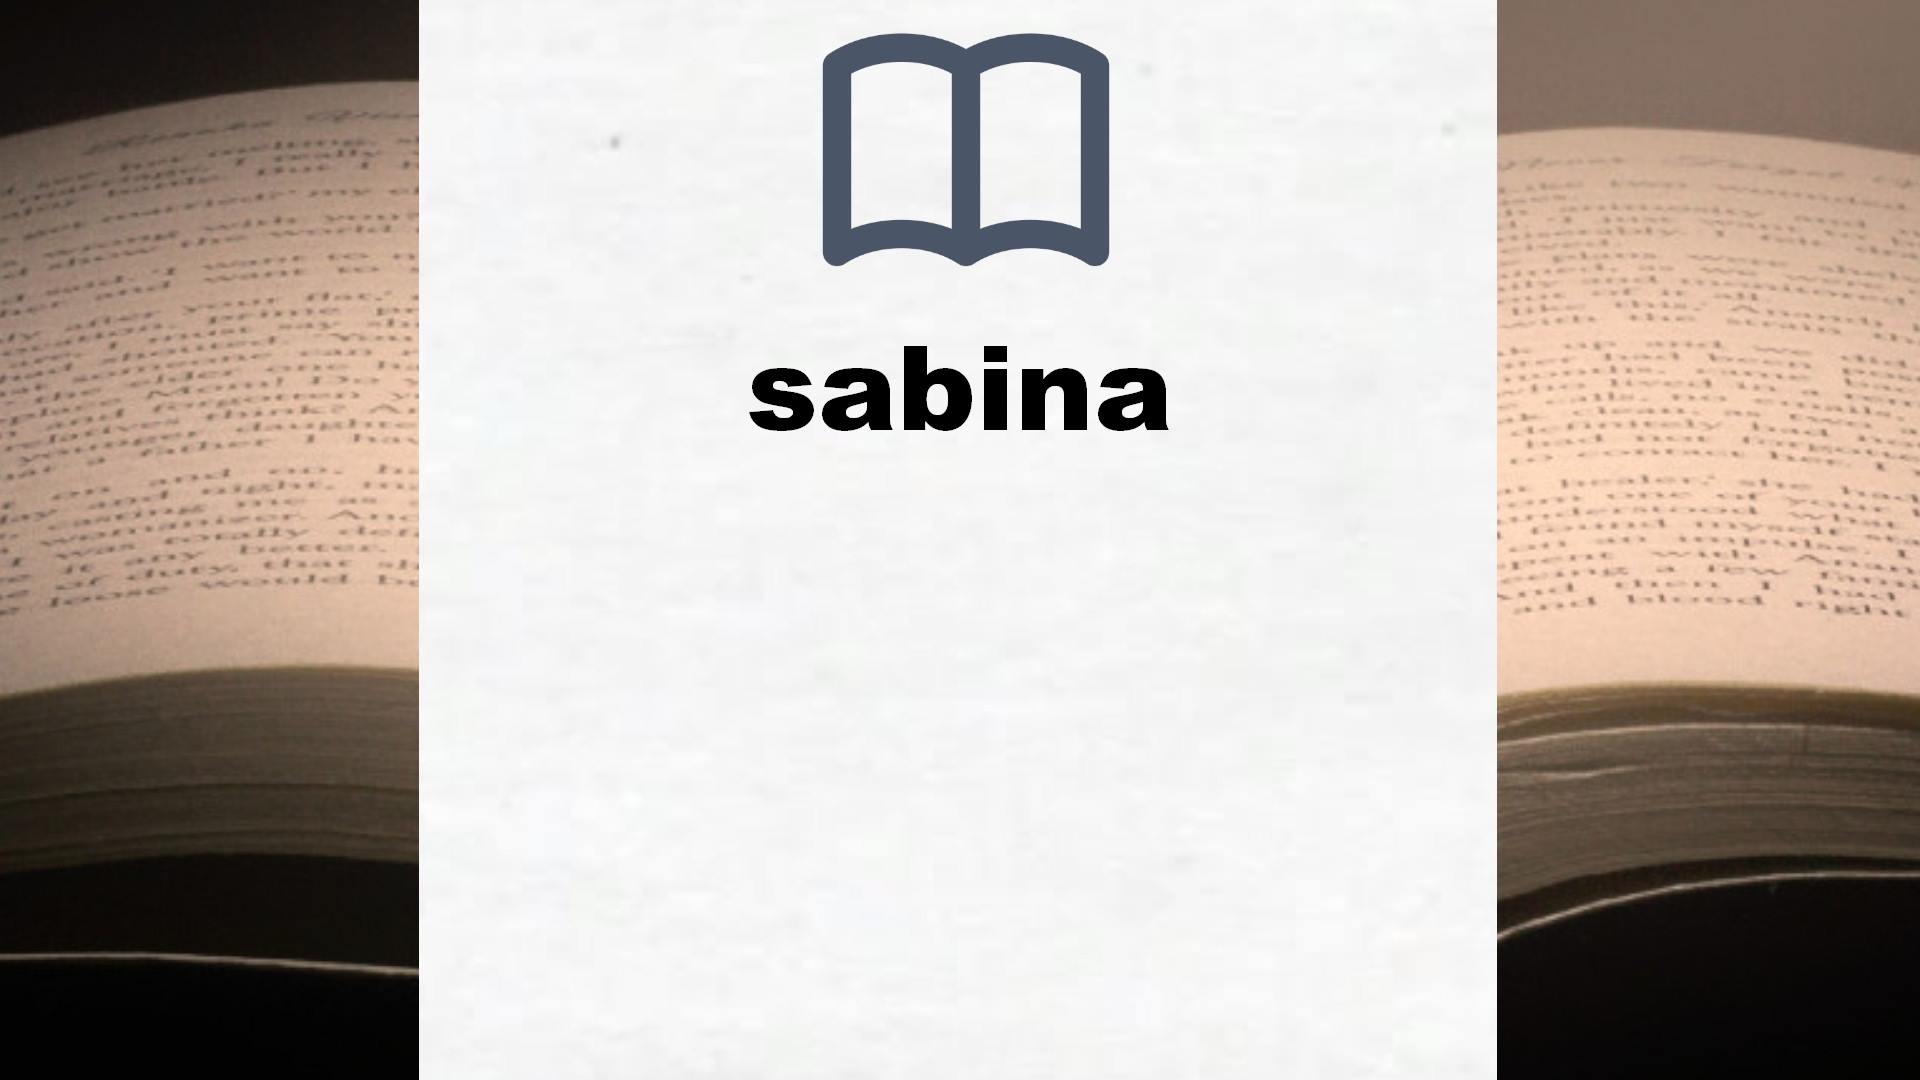 Libros sobre sabina